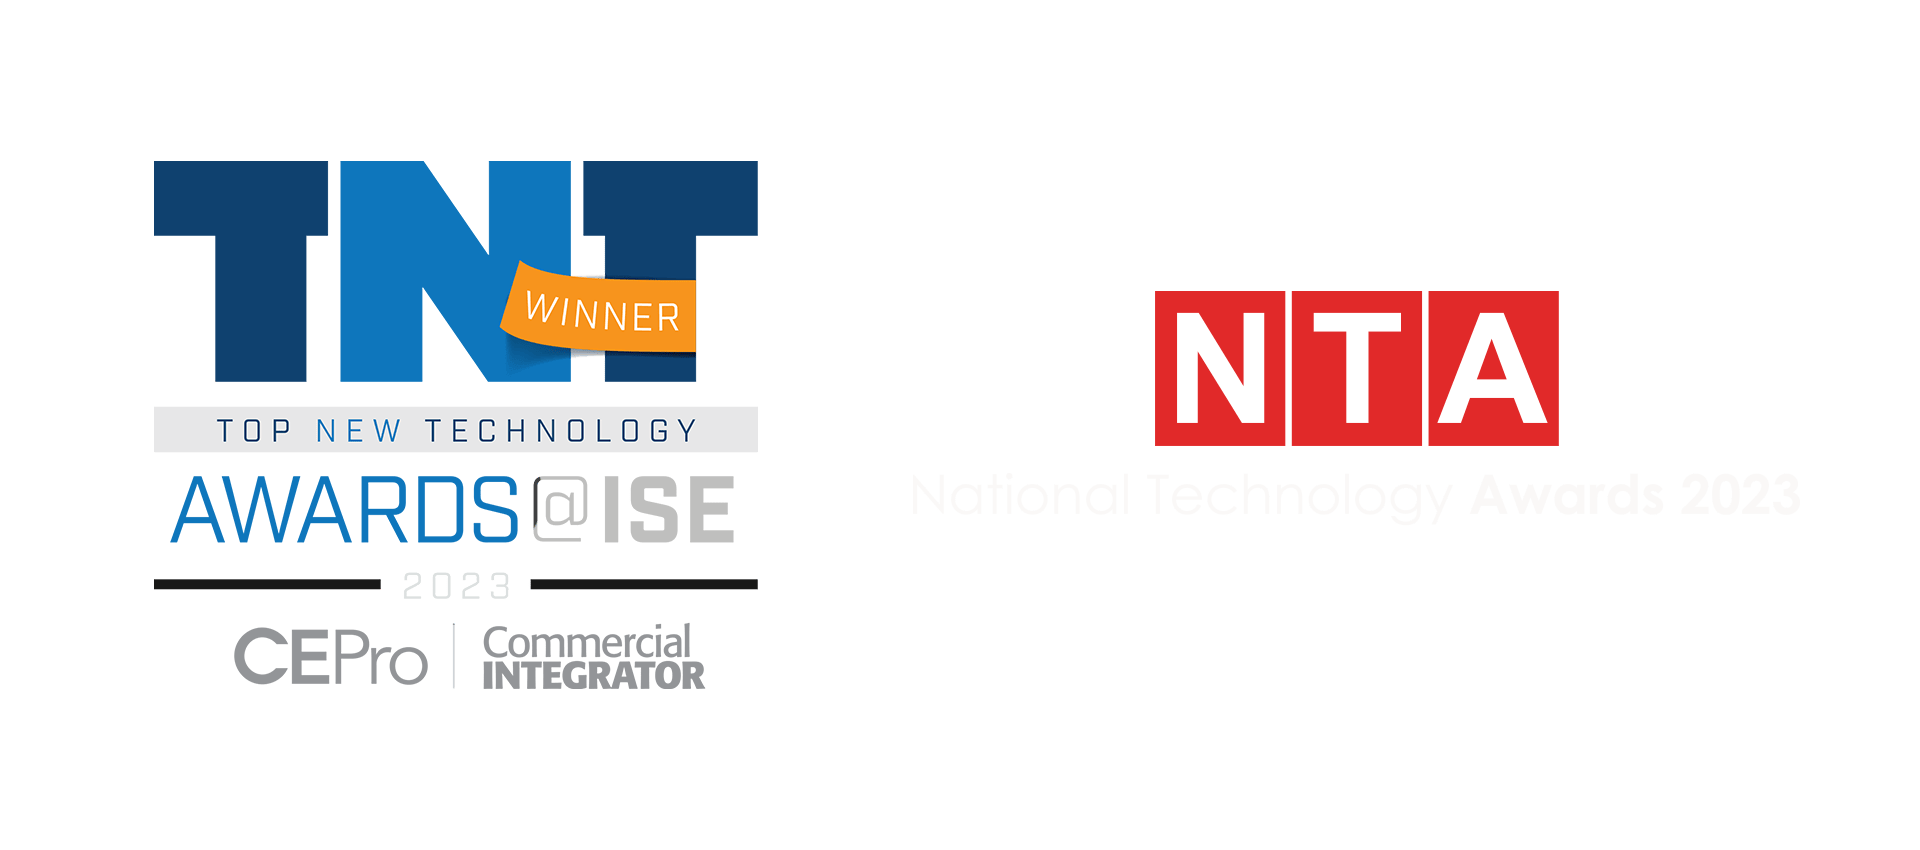 National Technology Awards CePro Awards ISE